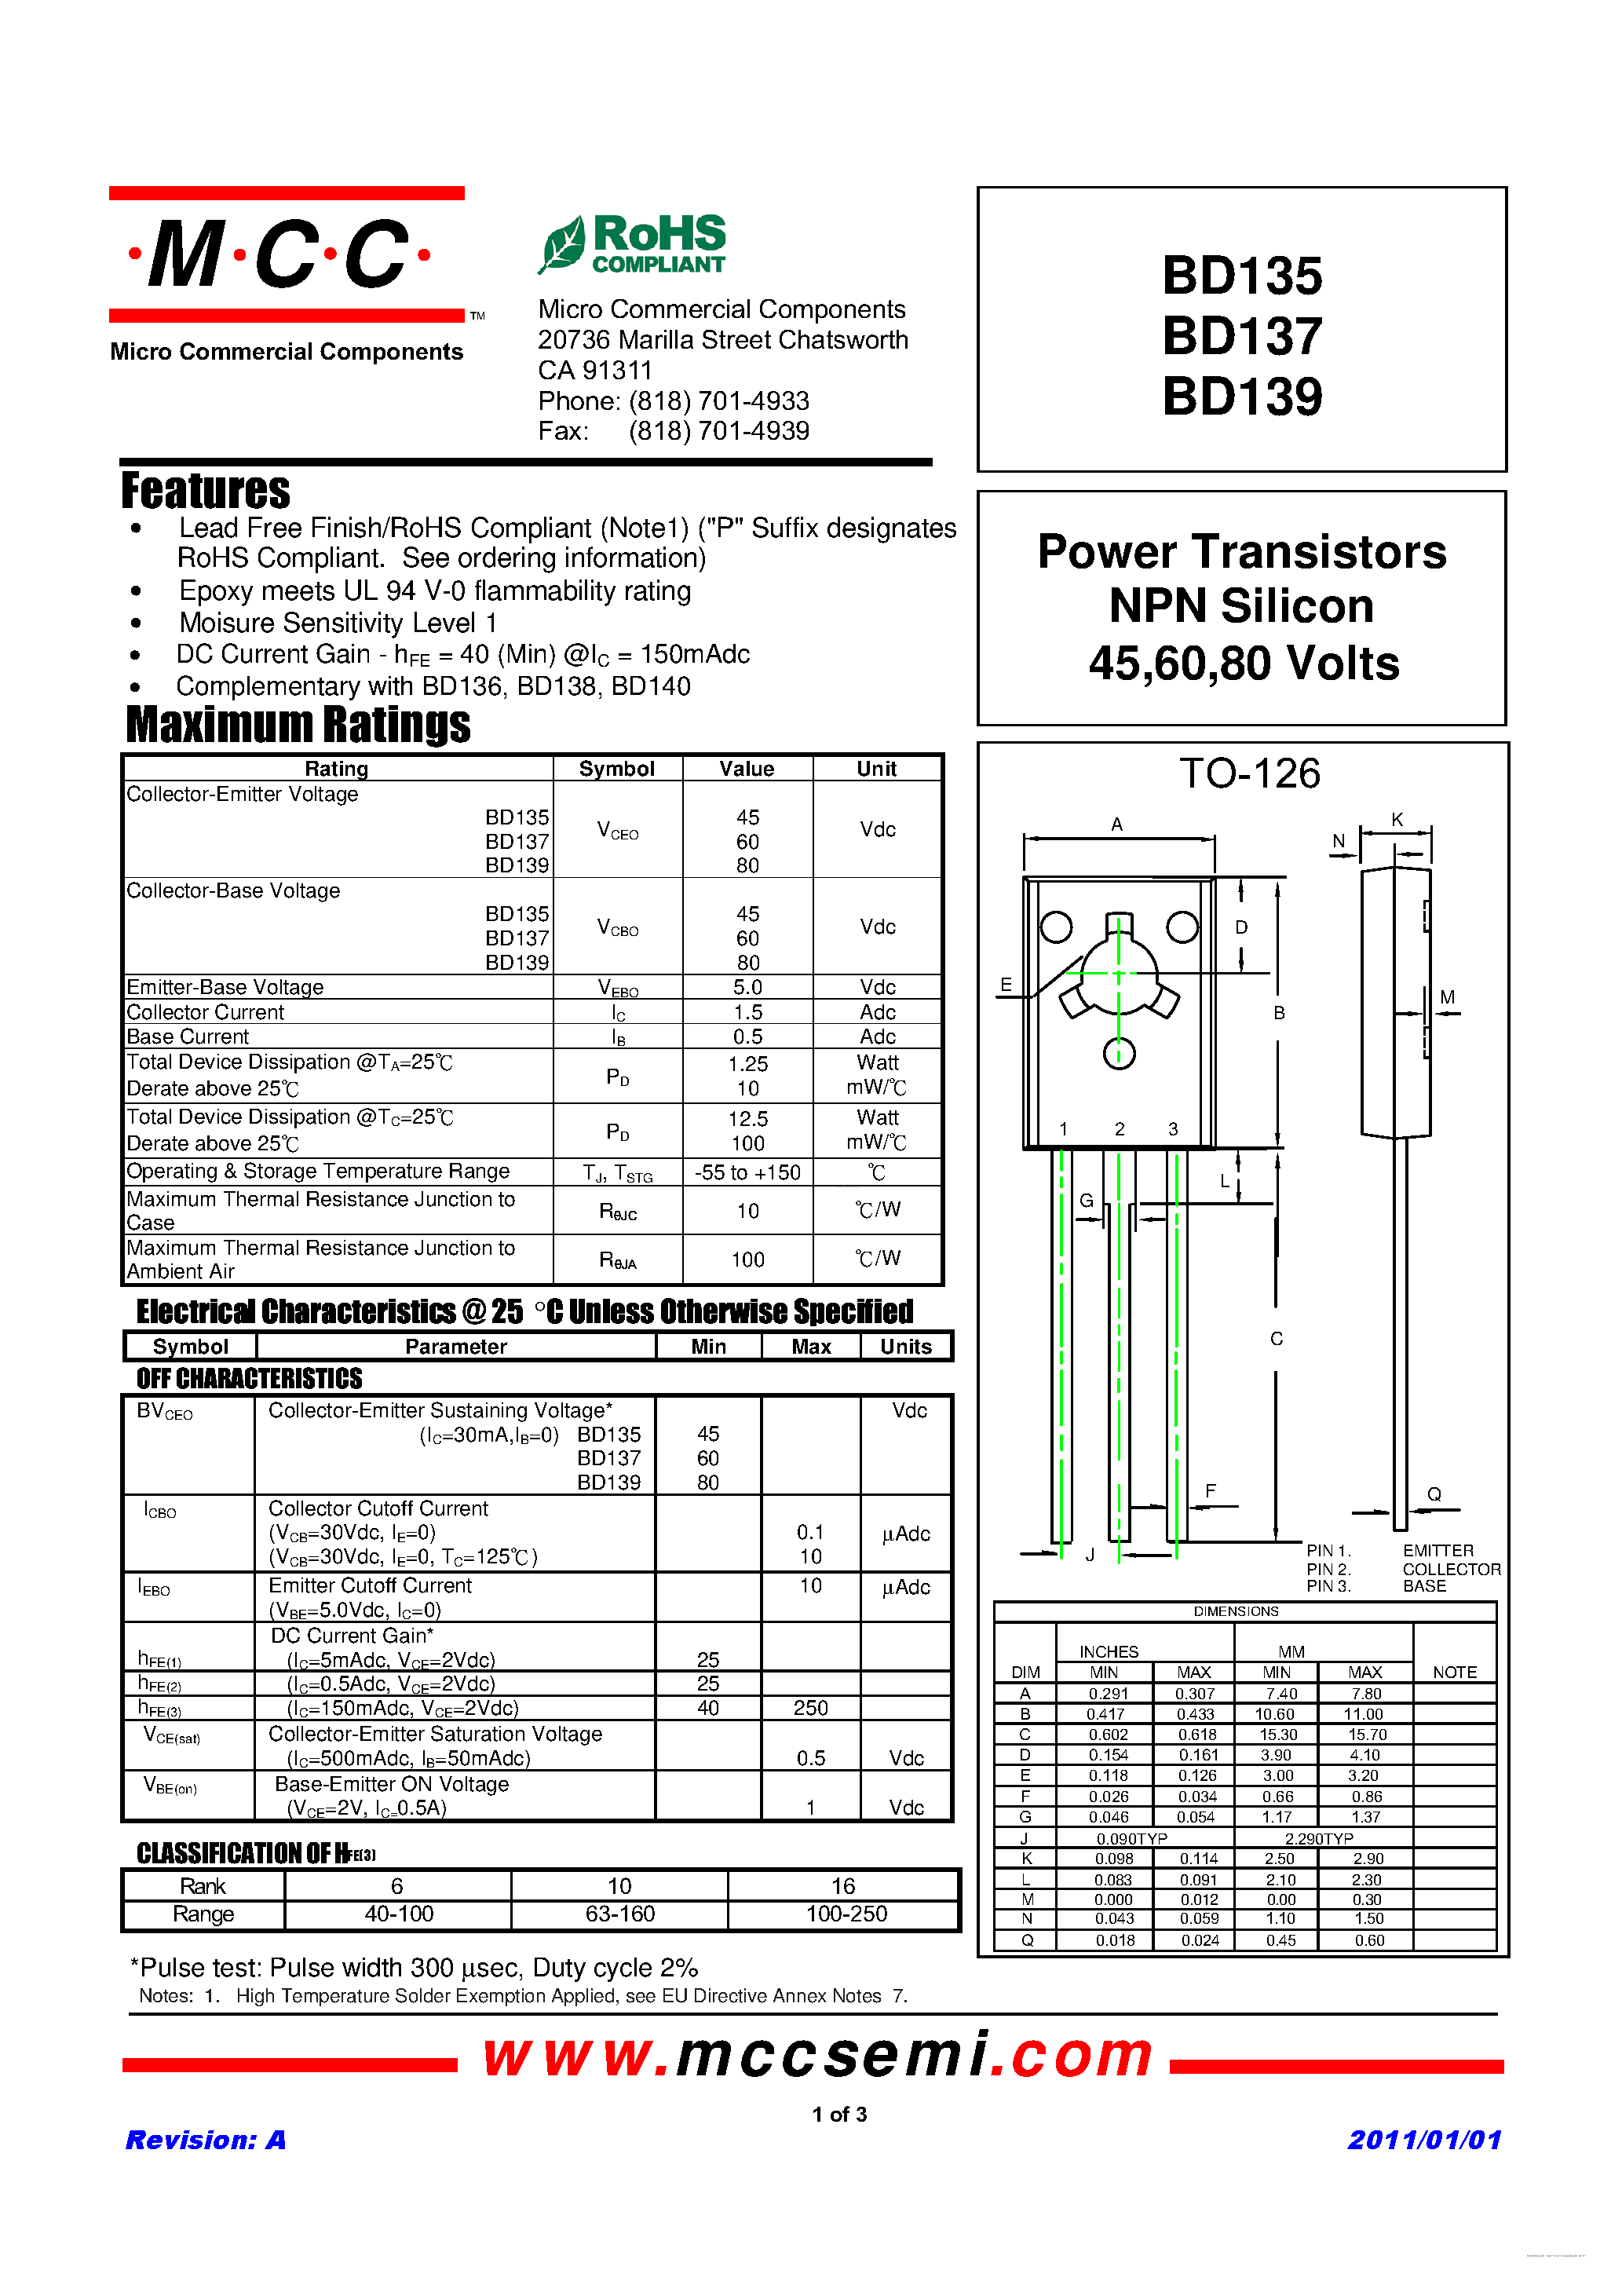 Datasheet BD135 - (BD135 - BD139) Power Transistors NPN Silicon page 1